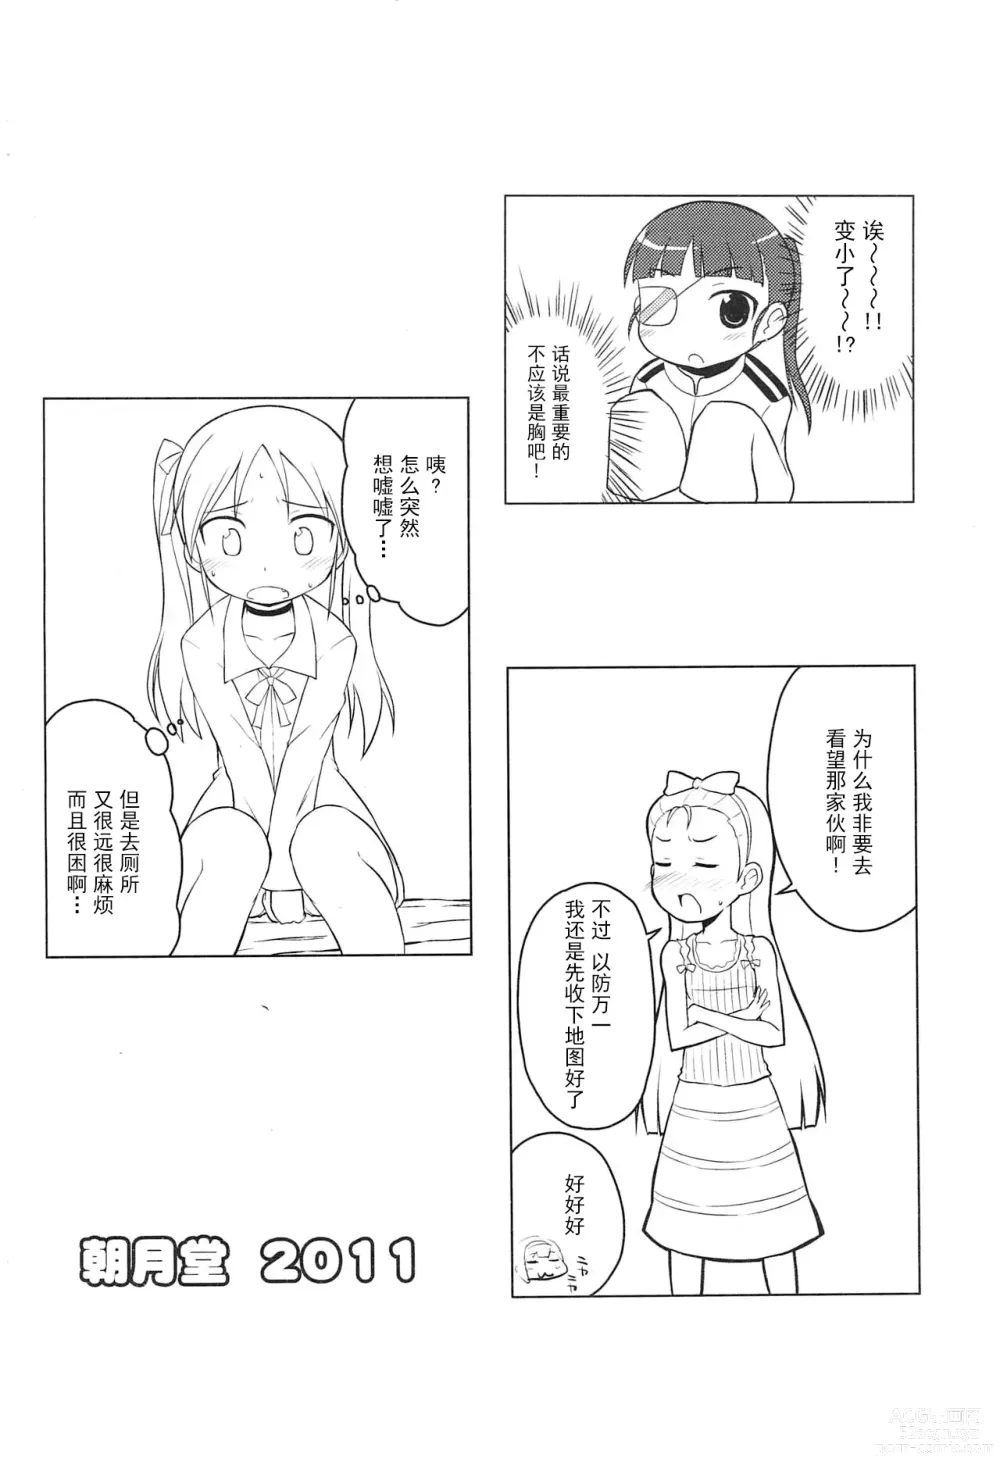 Page 52 of doujinshi Youta Tanpenshuu Yoru no Uta